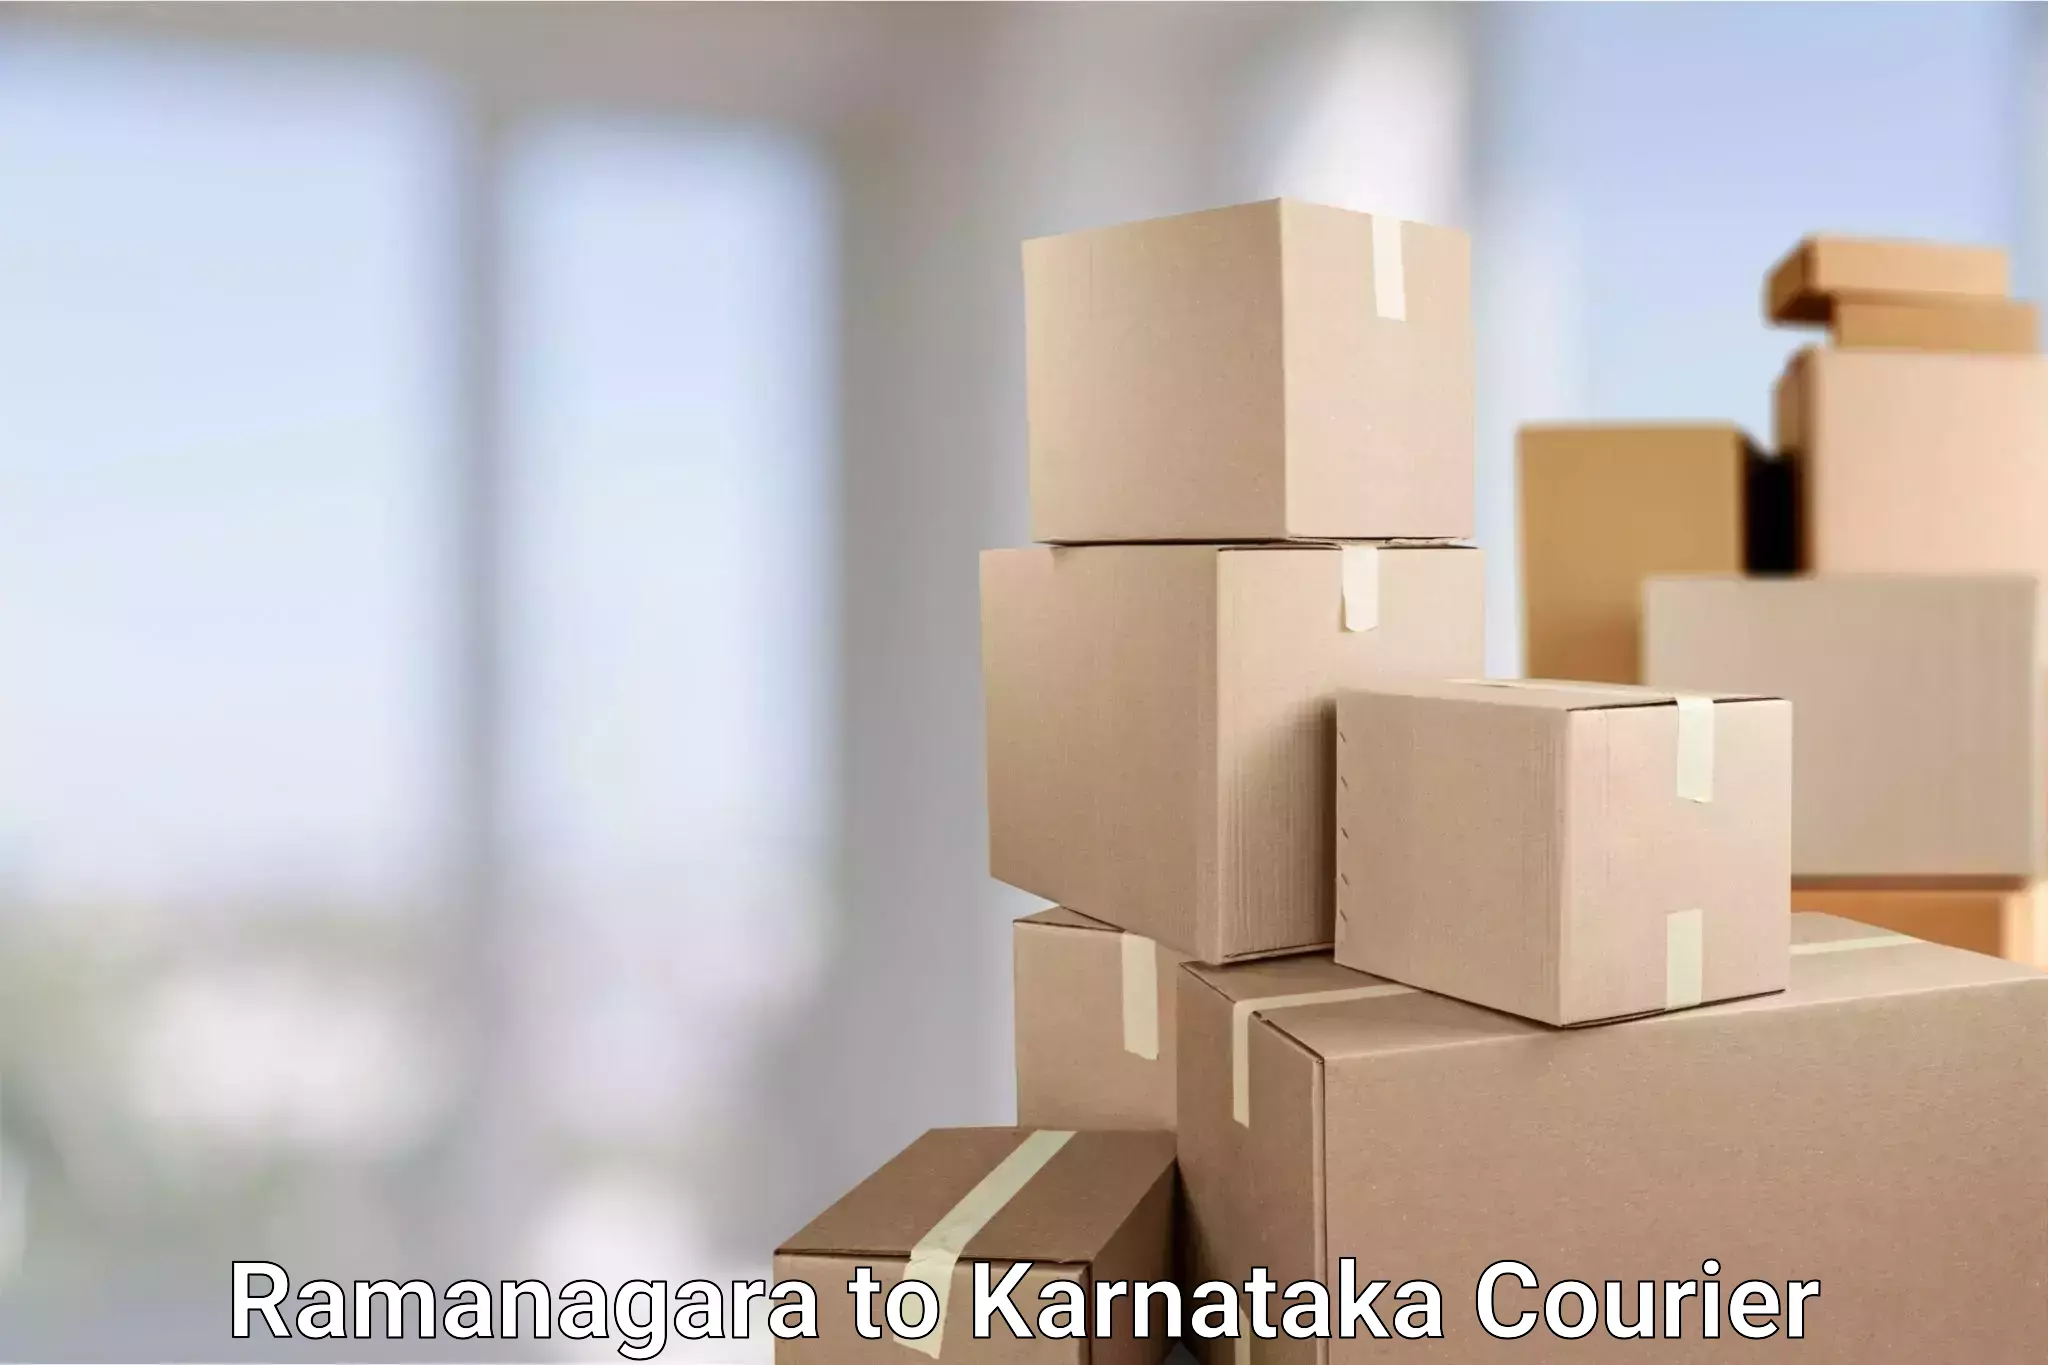 Global shipping solutions in Ramanagara to Uttara Kannada